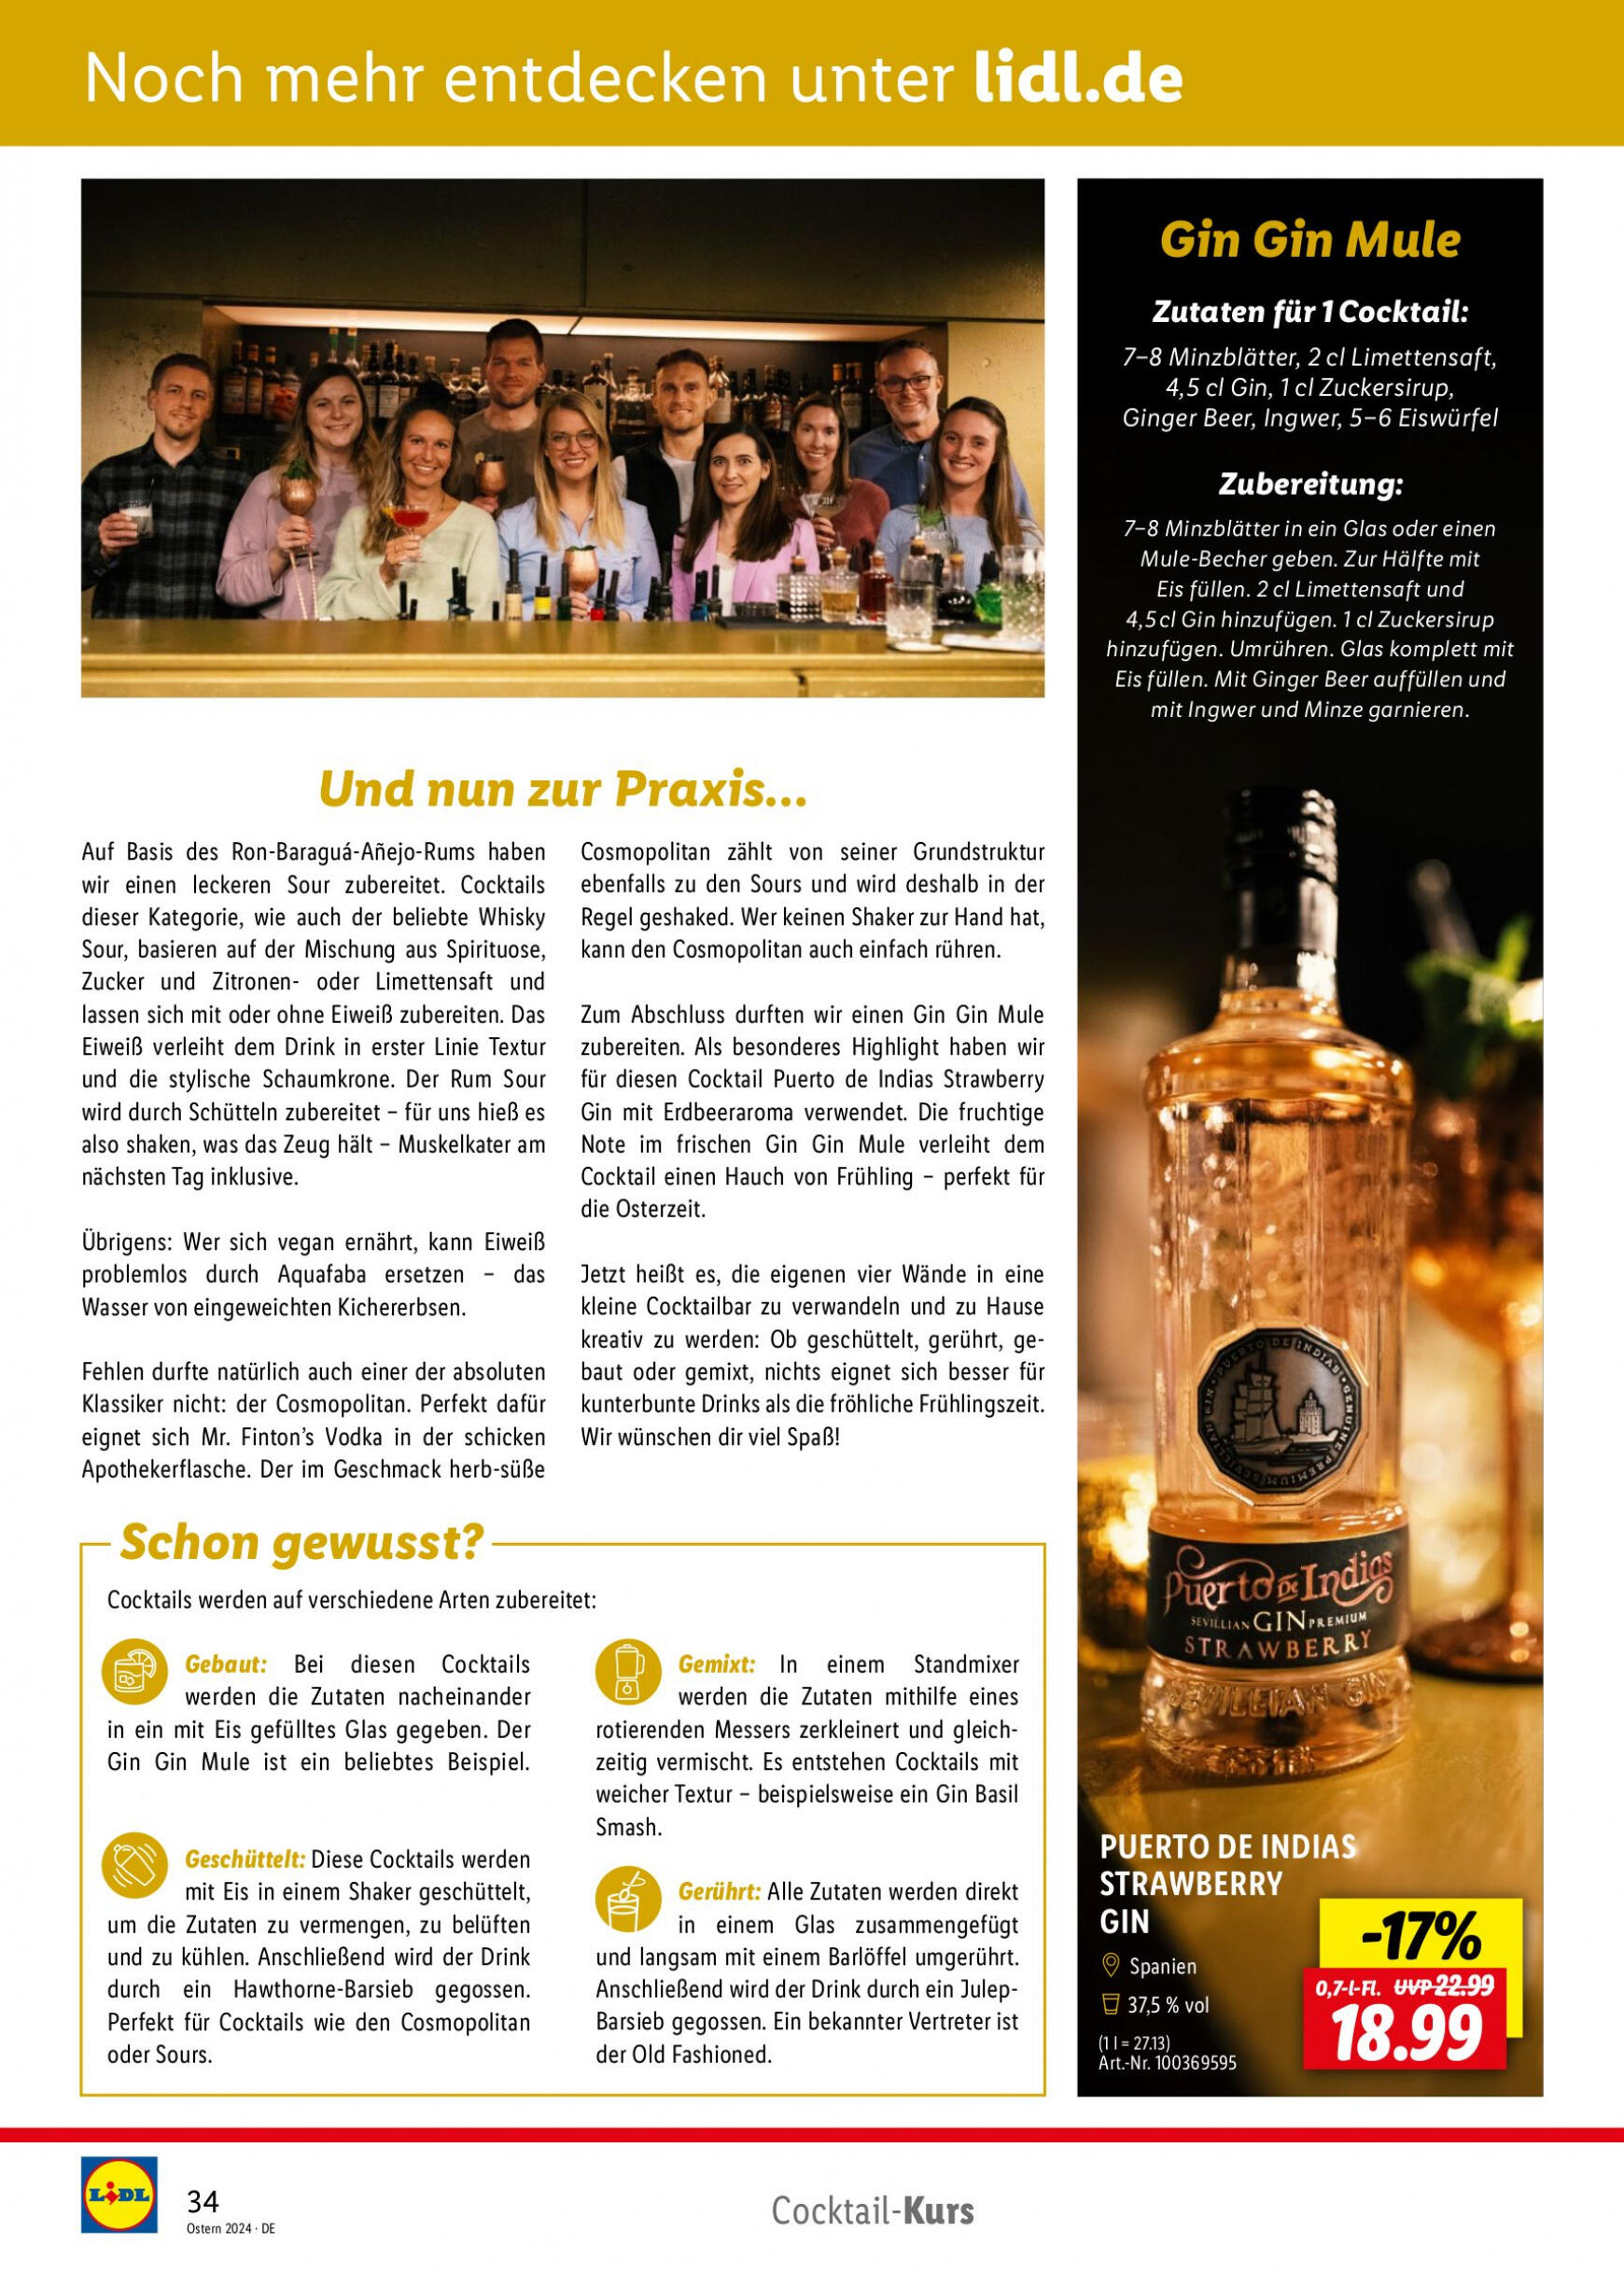 lidl - Flyer Lidl - Wein Entkorkt aktuell 04.03. - 30.04. - page: 34